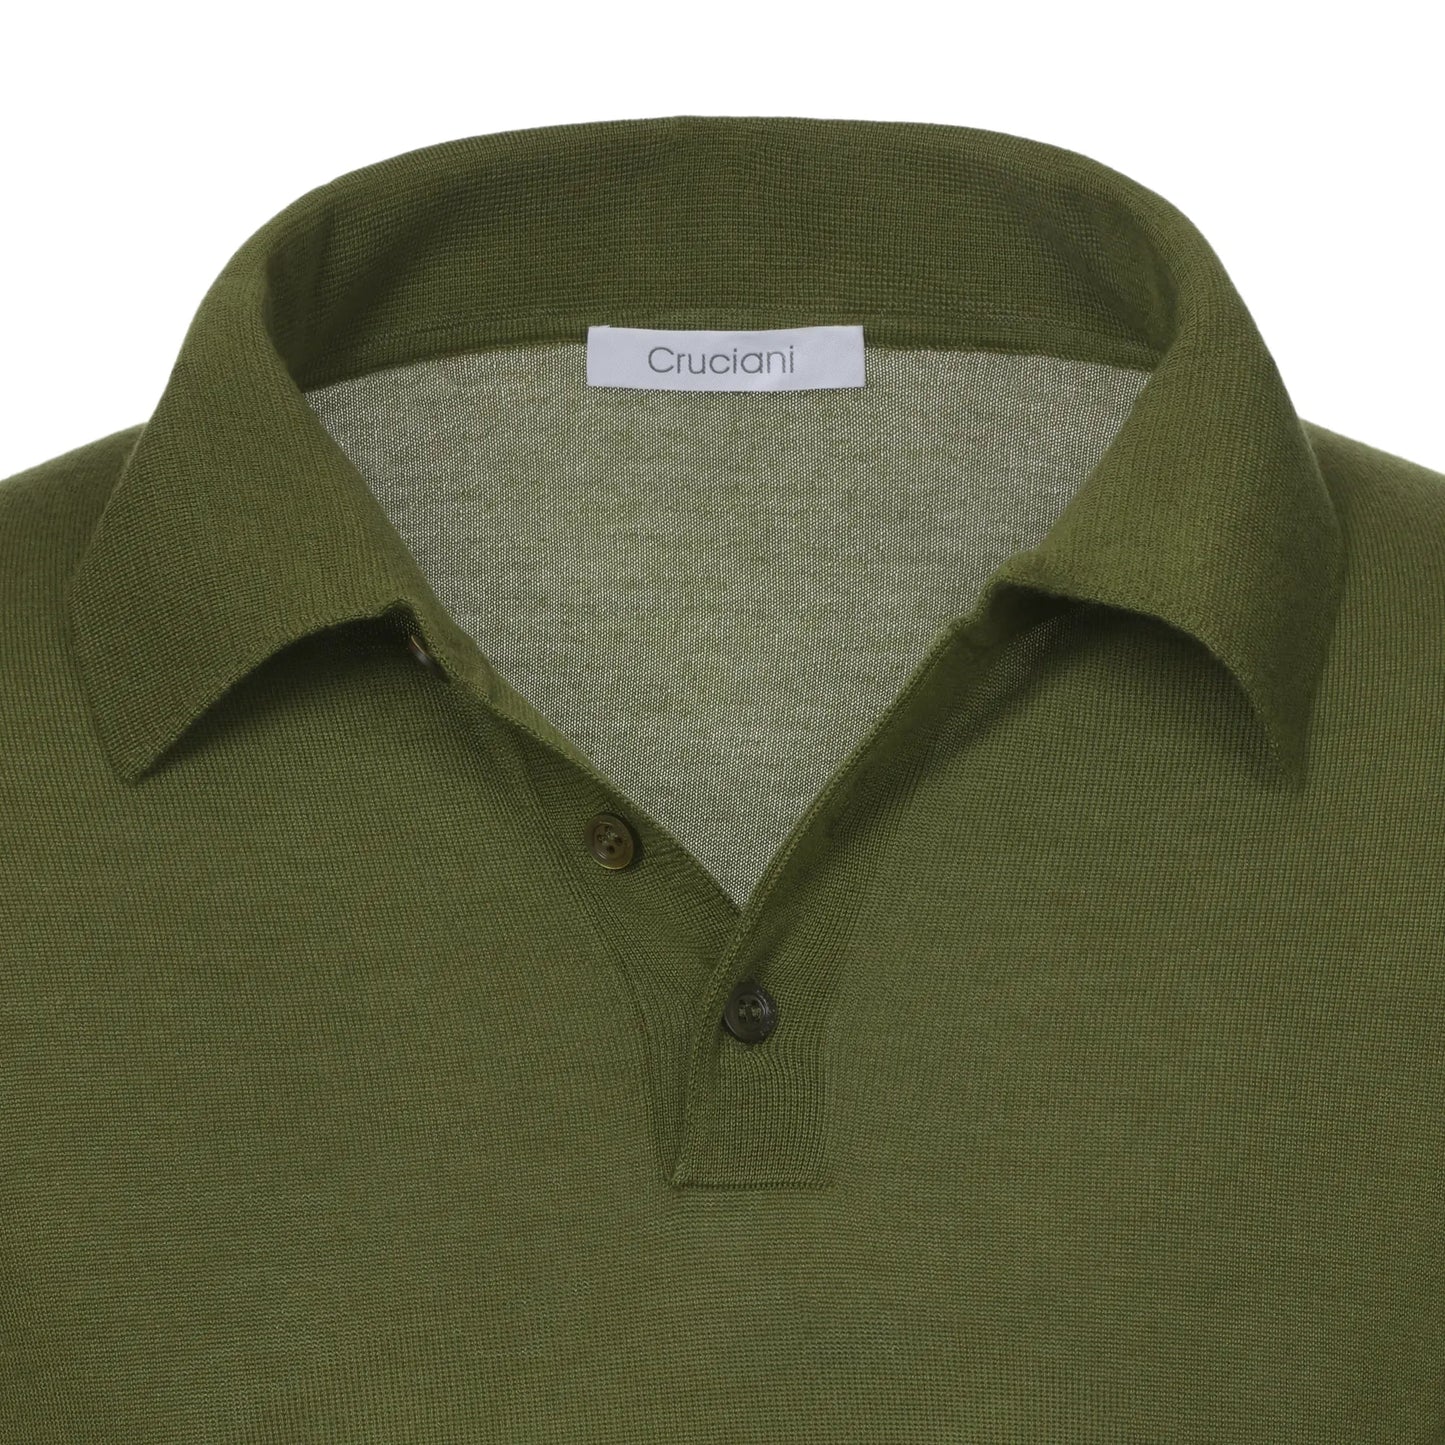 Cruciani Cashmere Blend Polo Shirt in Crocodile Green - SARTALE